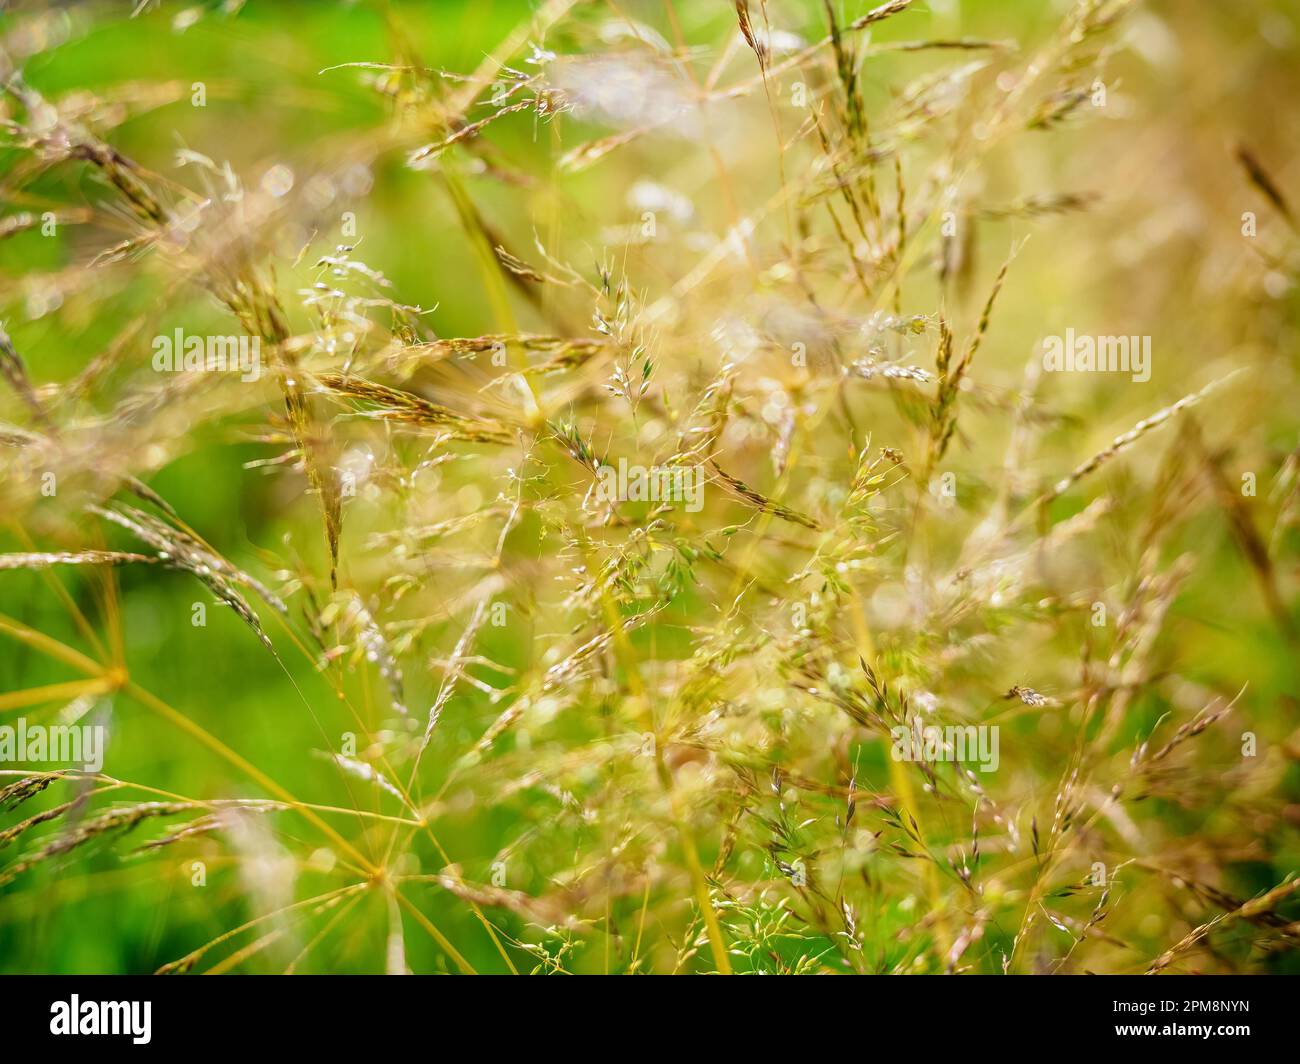 Agrostis capillaris, le courbé commun, le courbé colonial, ou le sommet brun, la famille de l'herbe. Résumé de la nature Banque D'Images